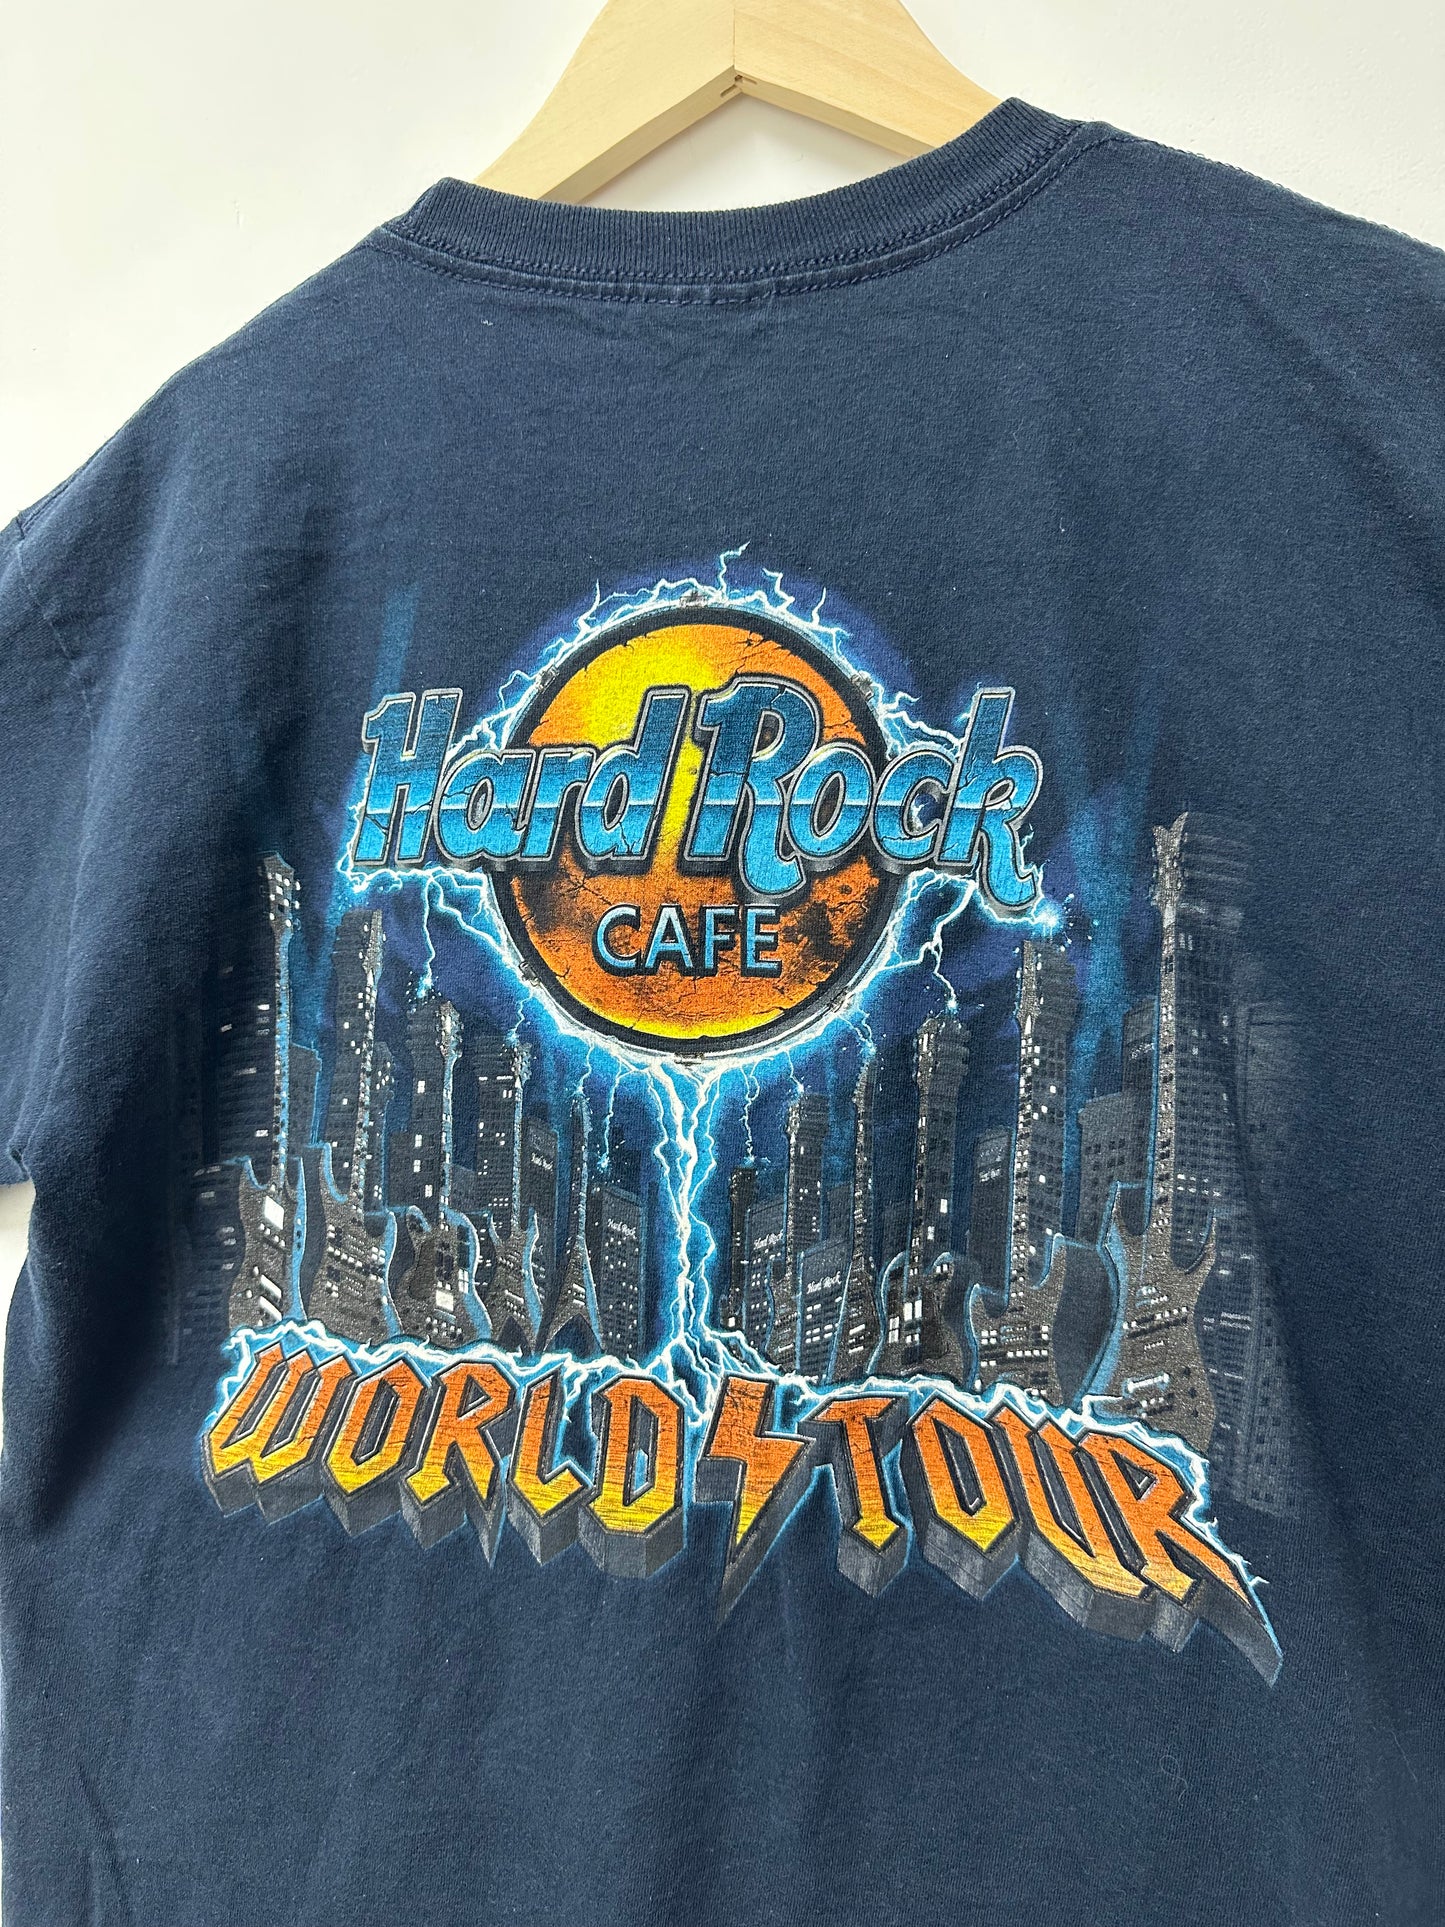 Hard Rock Cafe-Thunder